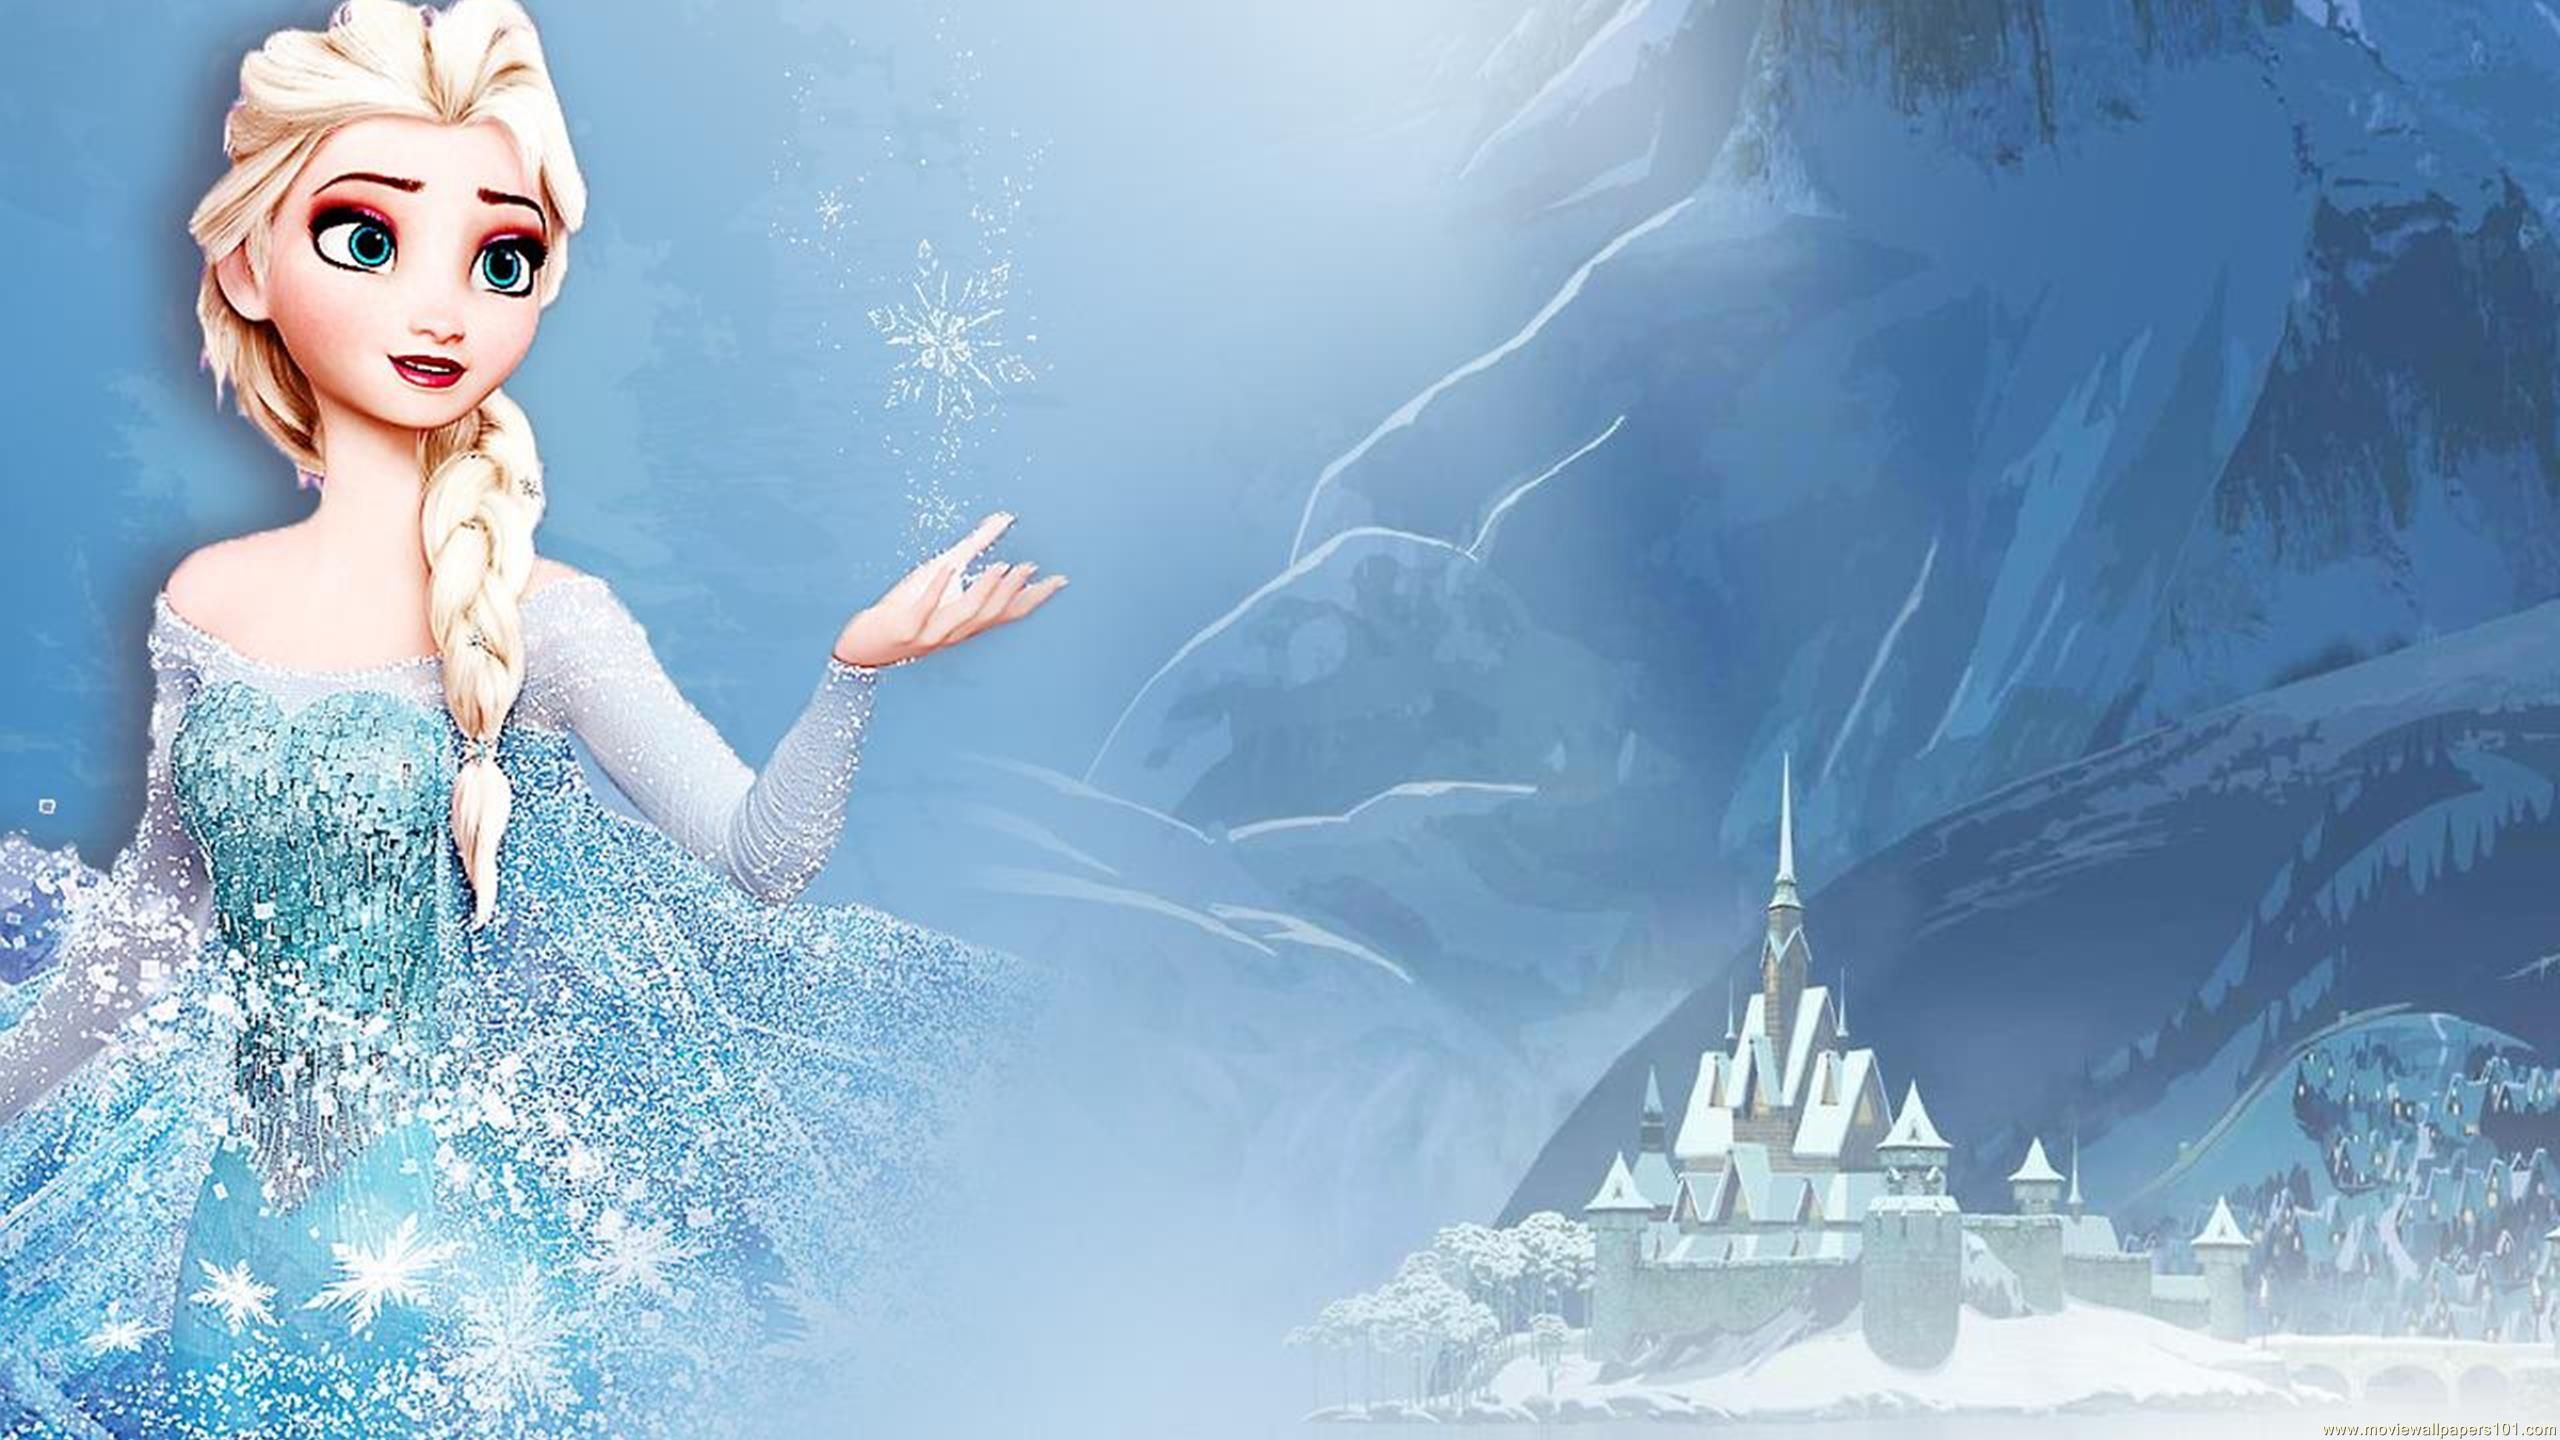 Wallpaper  illustration movies Frozen movie Olaf reindeer Princess  Anna Kristoff Frozen Sven Frozen 2880x1800 px 2880x1800  4kWallpaper   616102  HD Wallpapers  WallHere